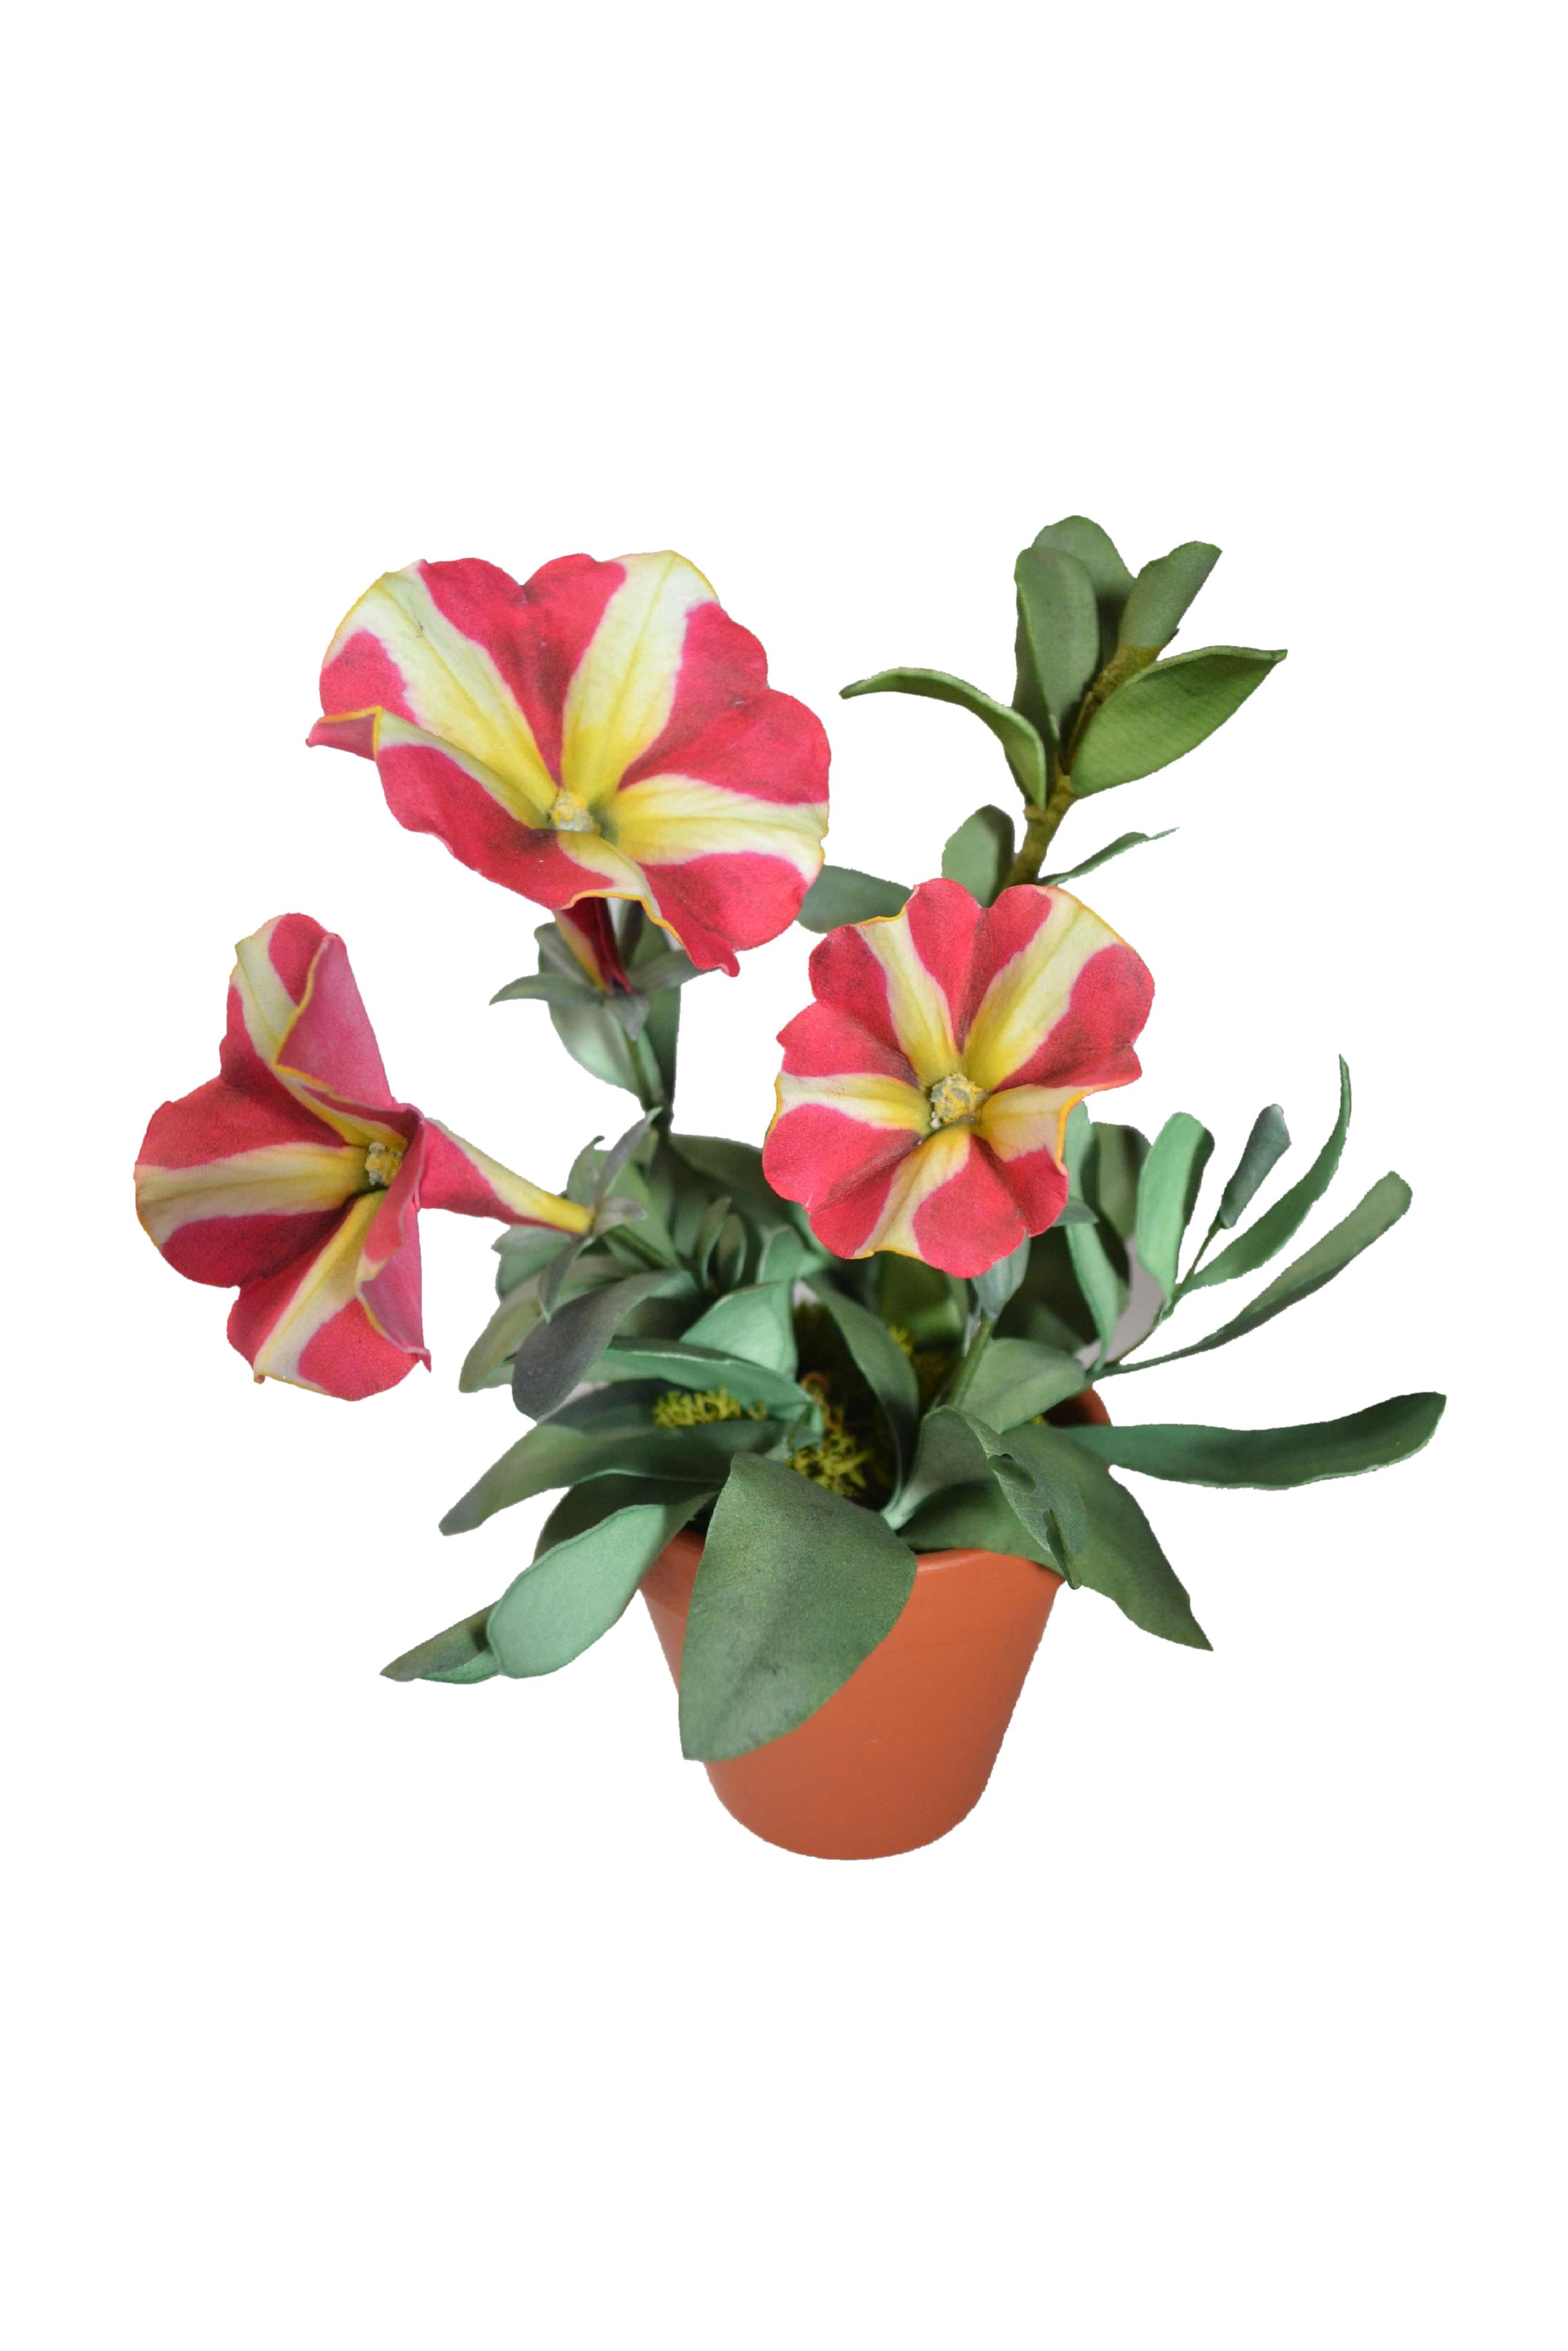 Pianta Petunia bicolor con Stampa B-R3D-P0104 